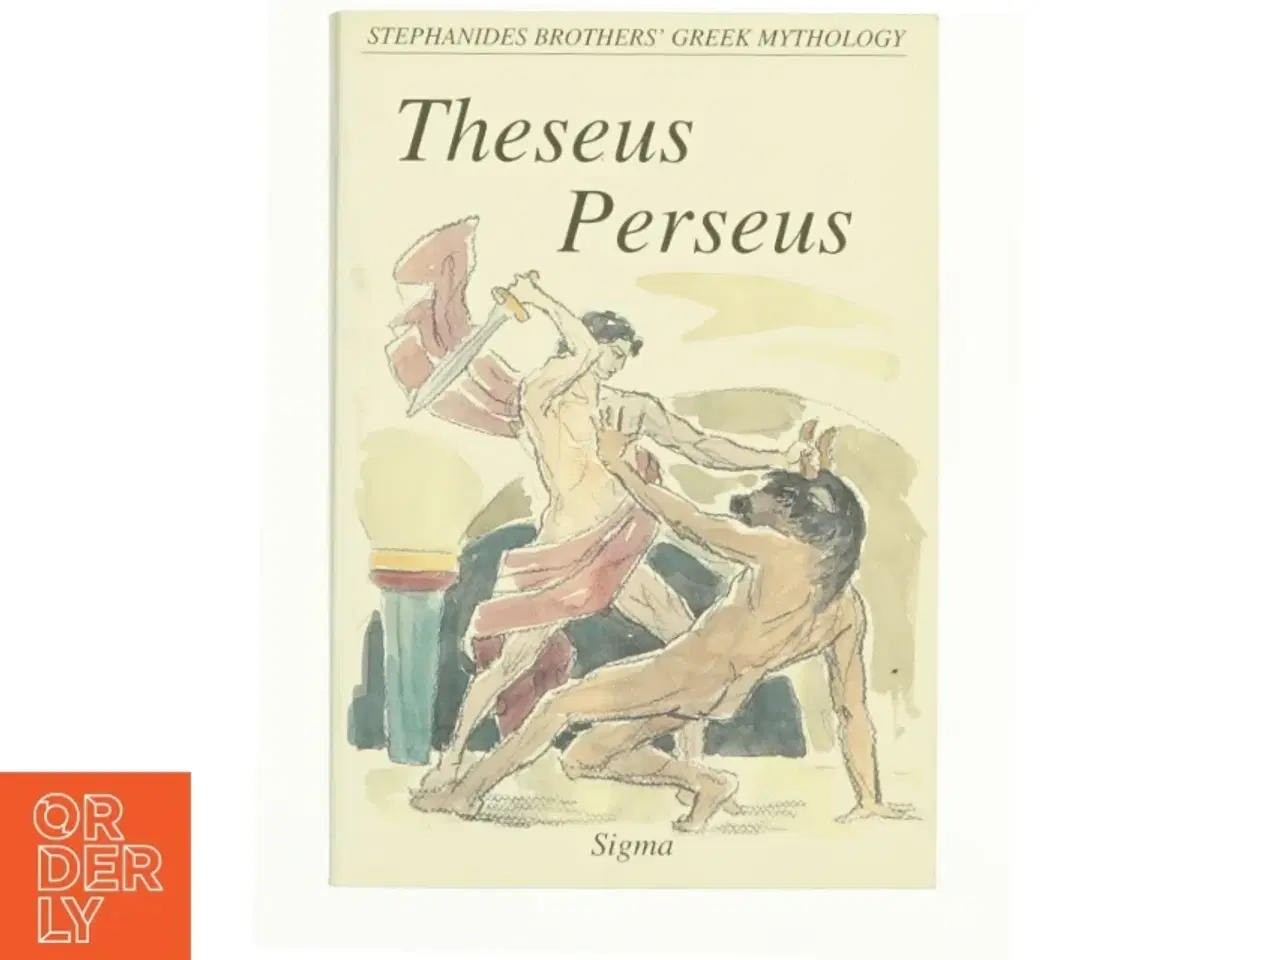 Billede 1 - Theseus: Perseus (Stephanides Brothers' Greek Mythology) af Menelaos Stephanides (Bog)